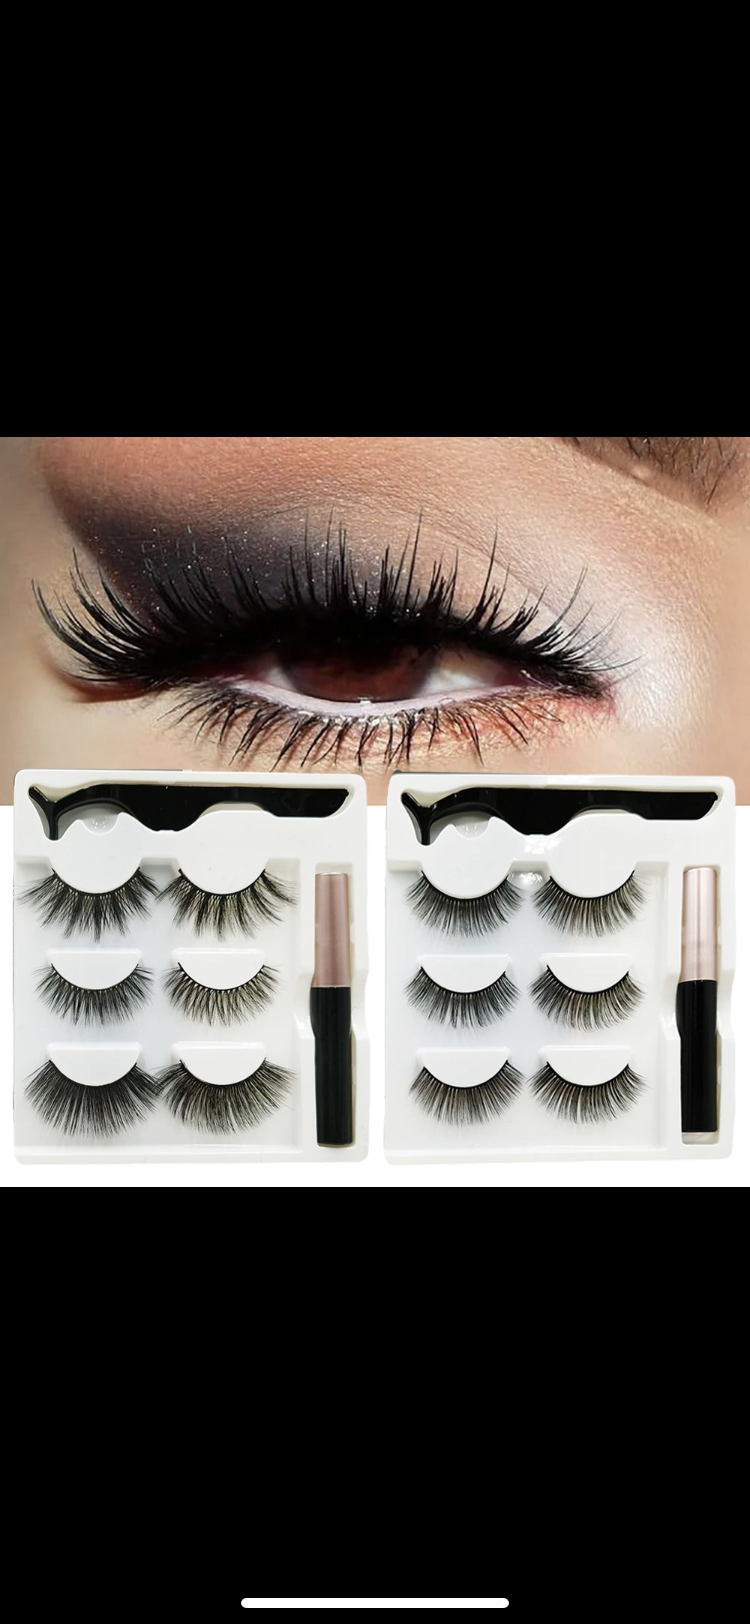 Magnetic False Eyelash Kit: Effortless Glamour with Magnetic Lashes and Eyeliner